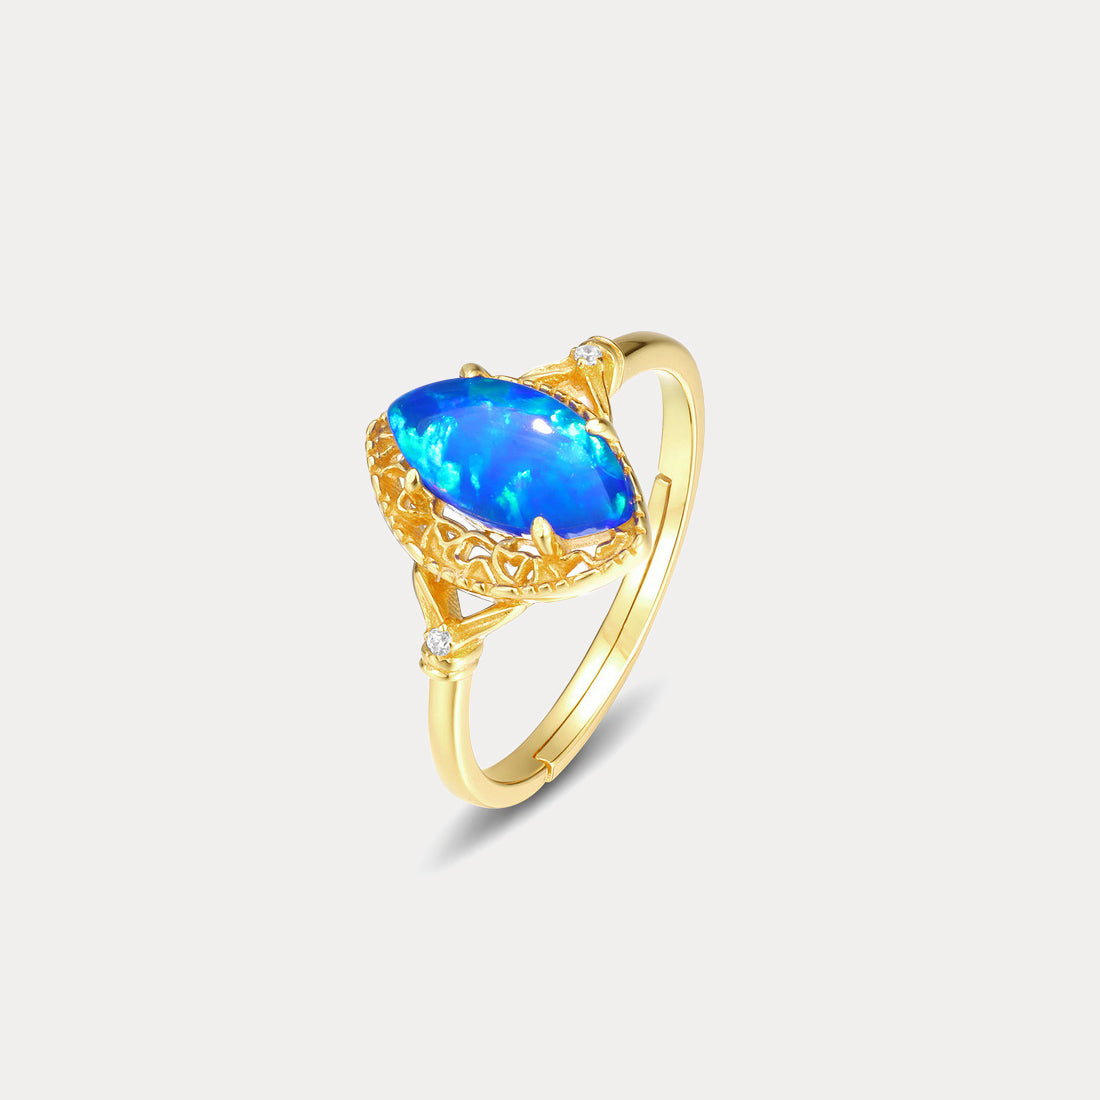 Selenichast Blue Opal Ring